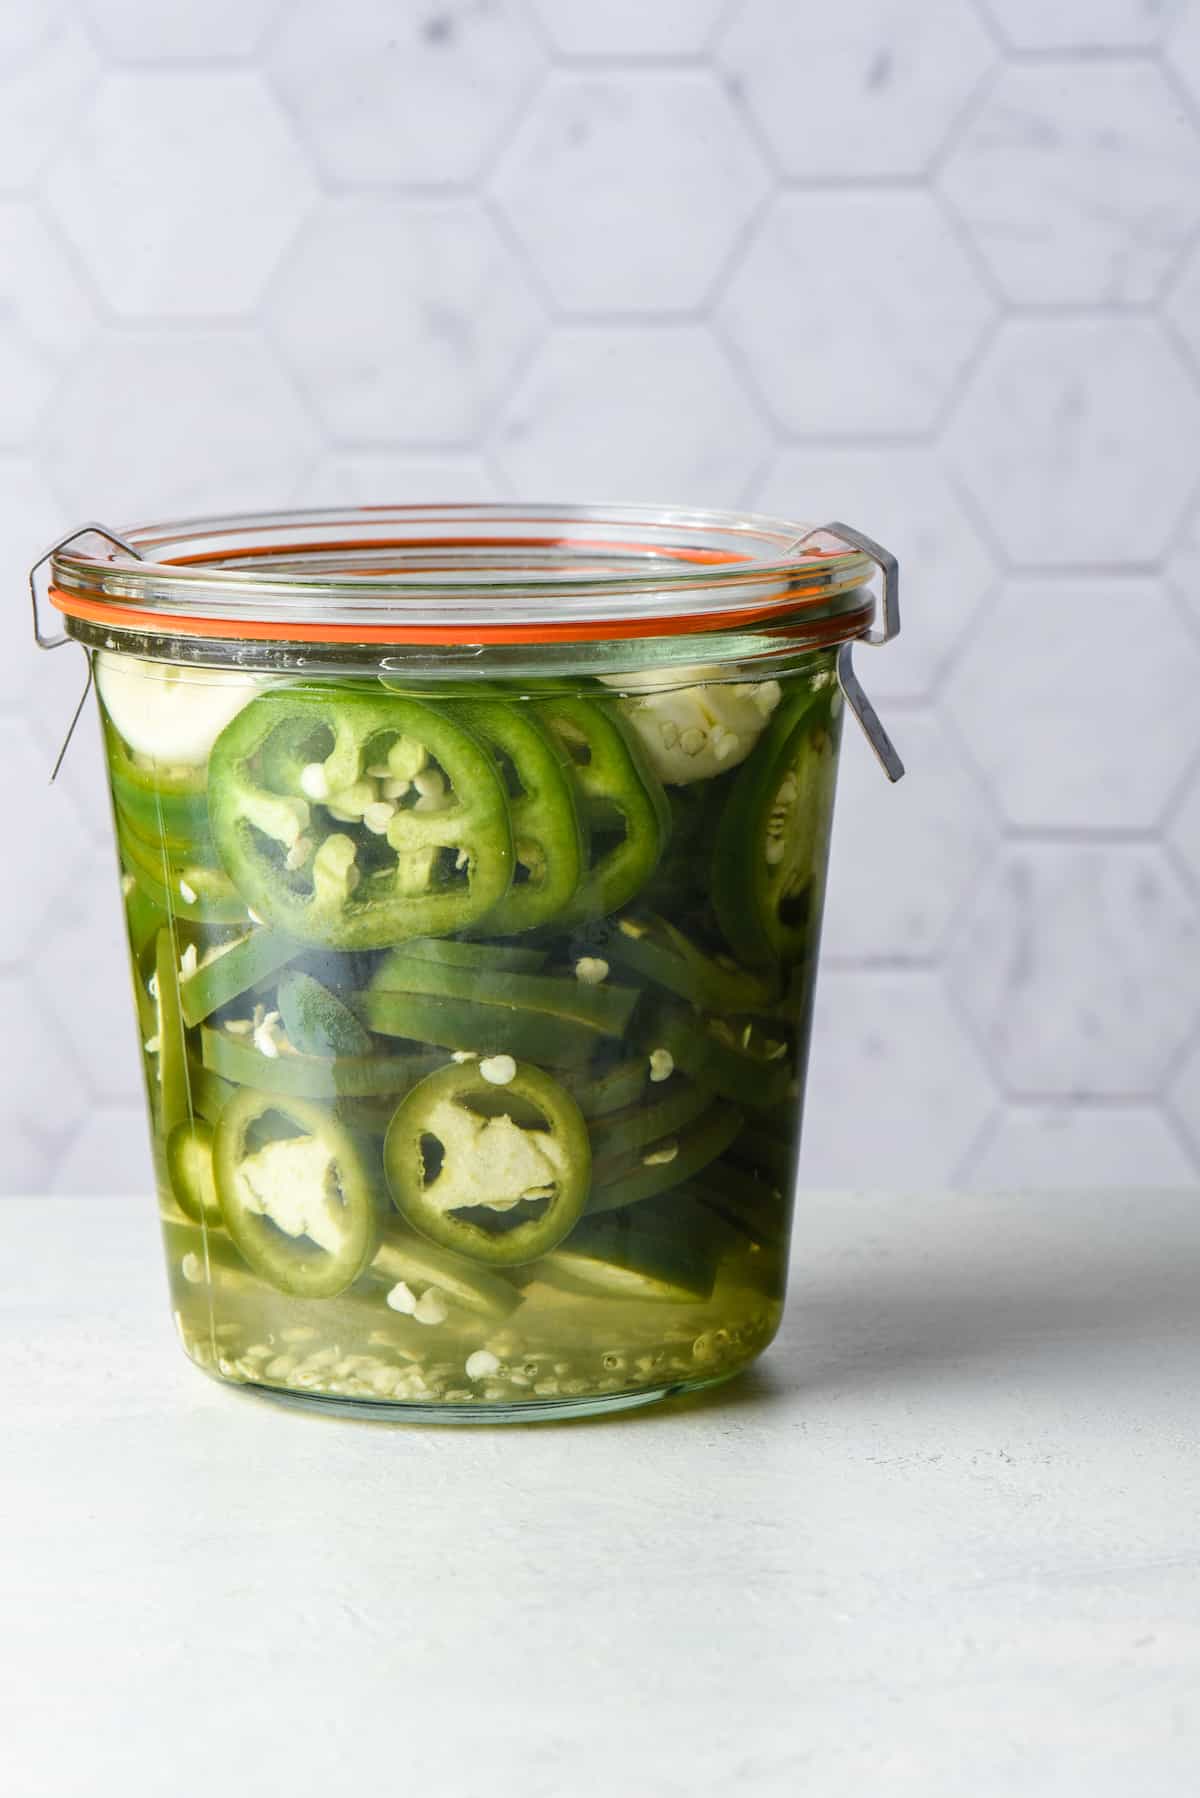 Jar of pickled jalapenos against light background.